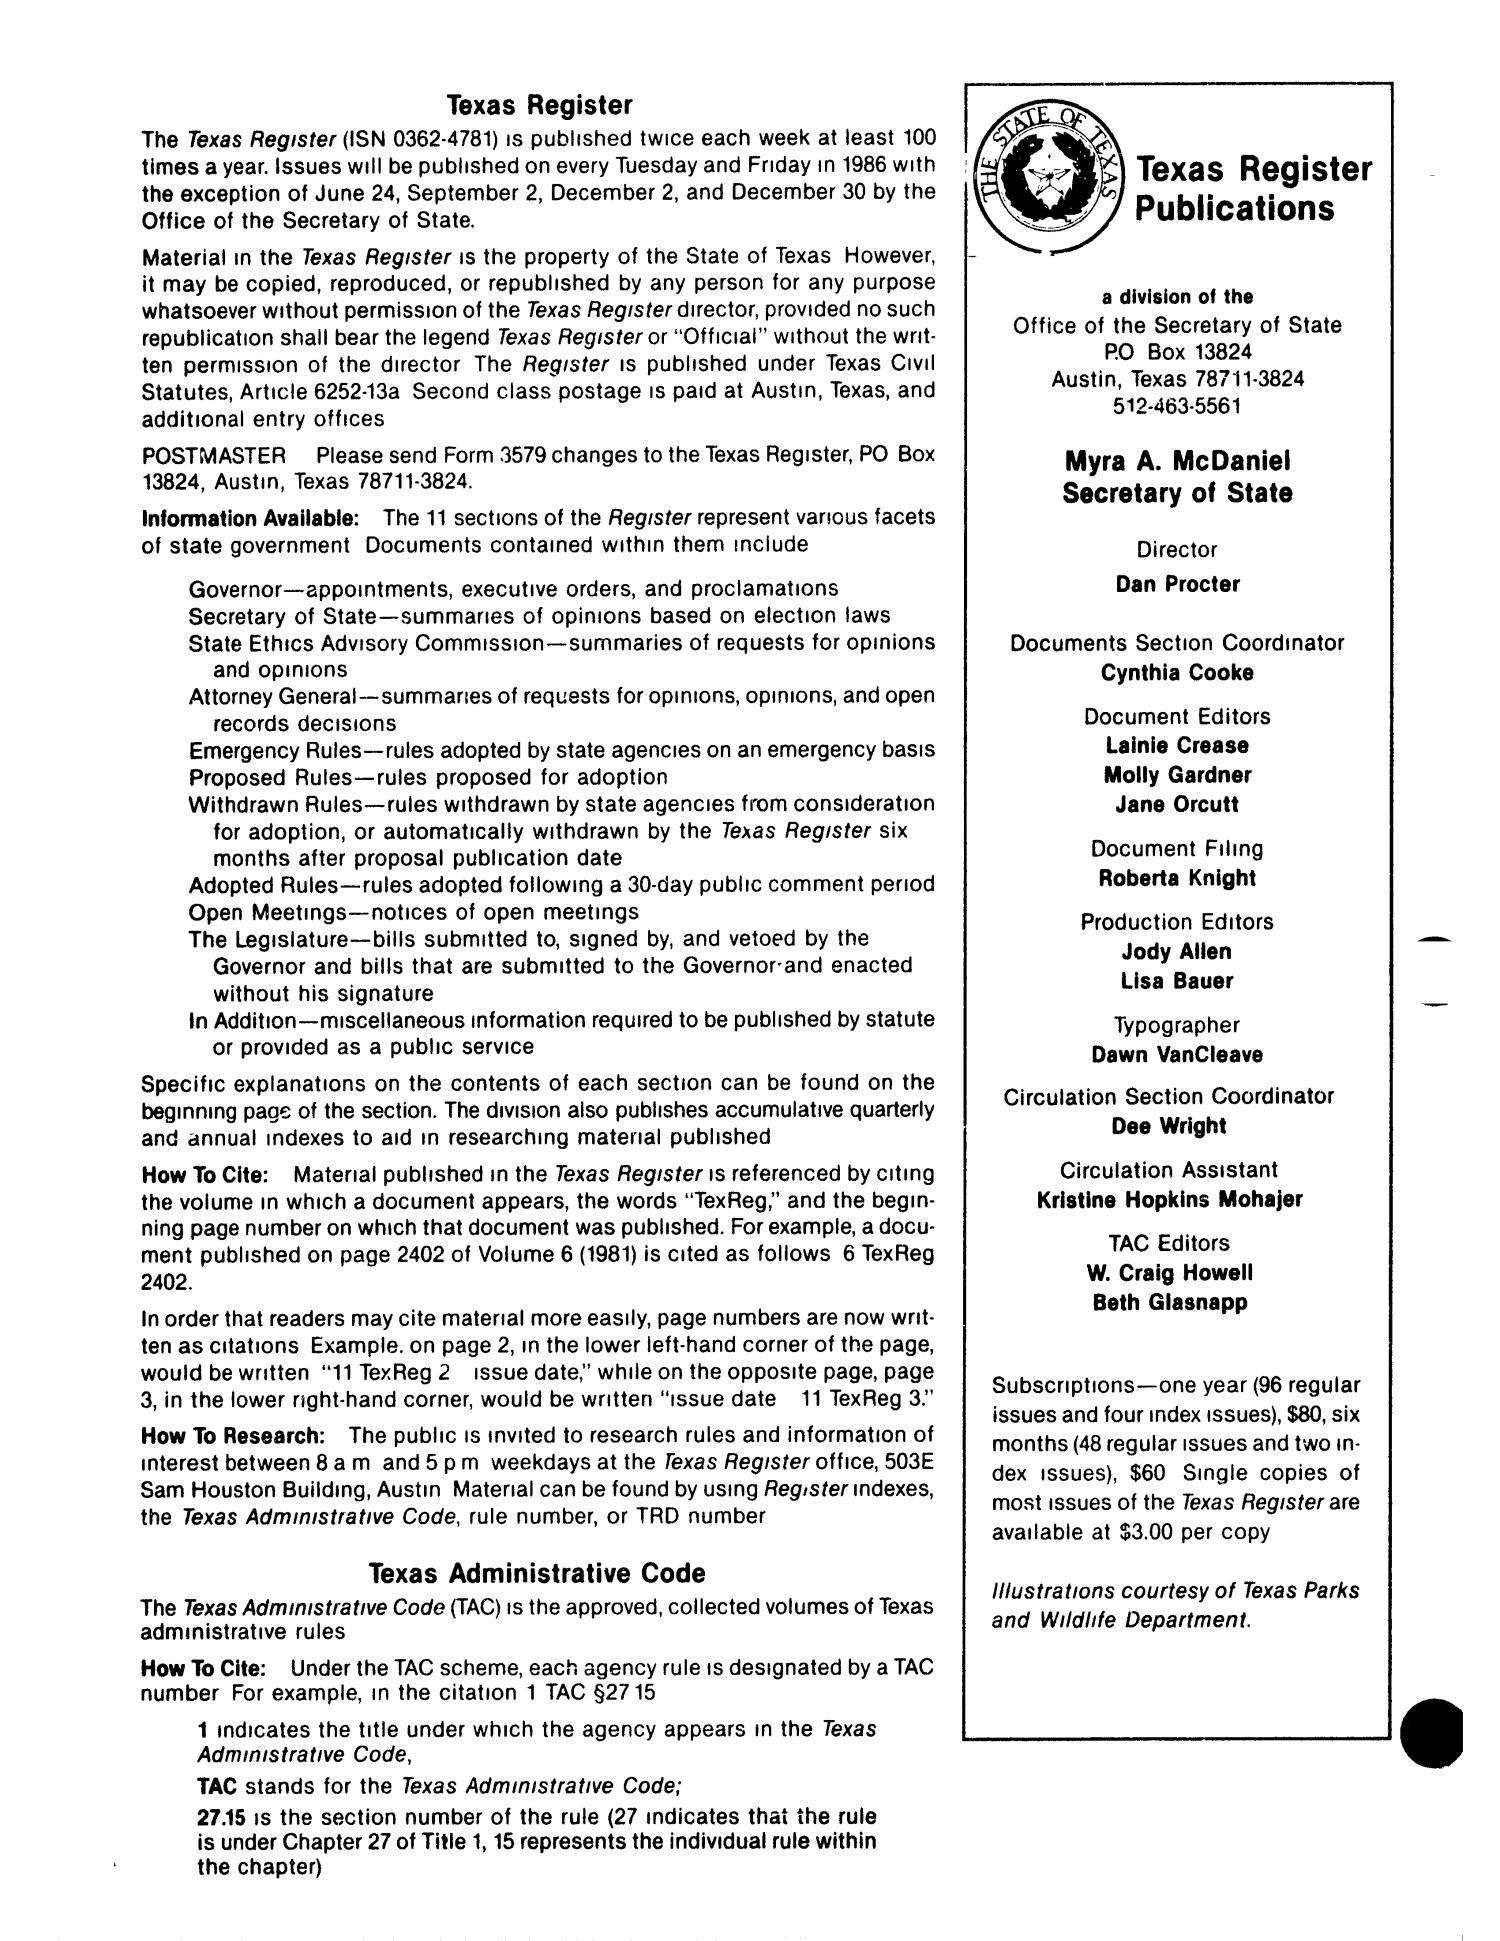 Texas Register, Volume 11, Number 83, Pages 4557-4604, November 4, 1986
                                                
                                                    4558
                                                